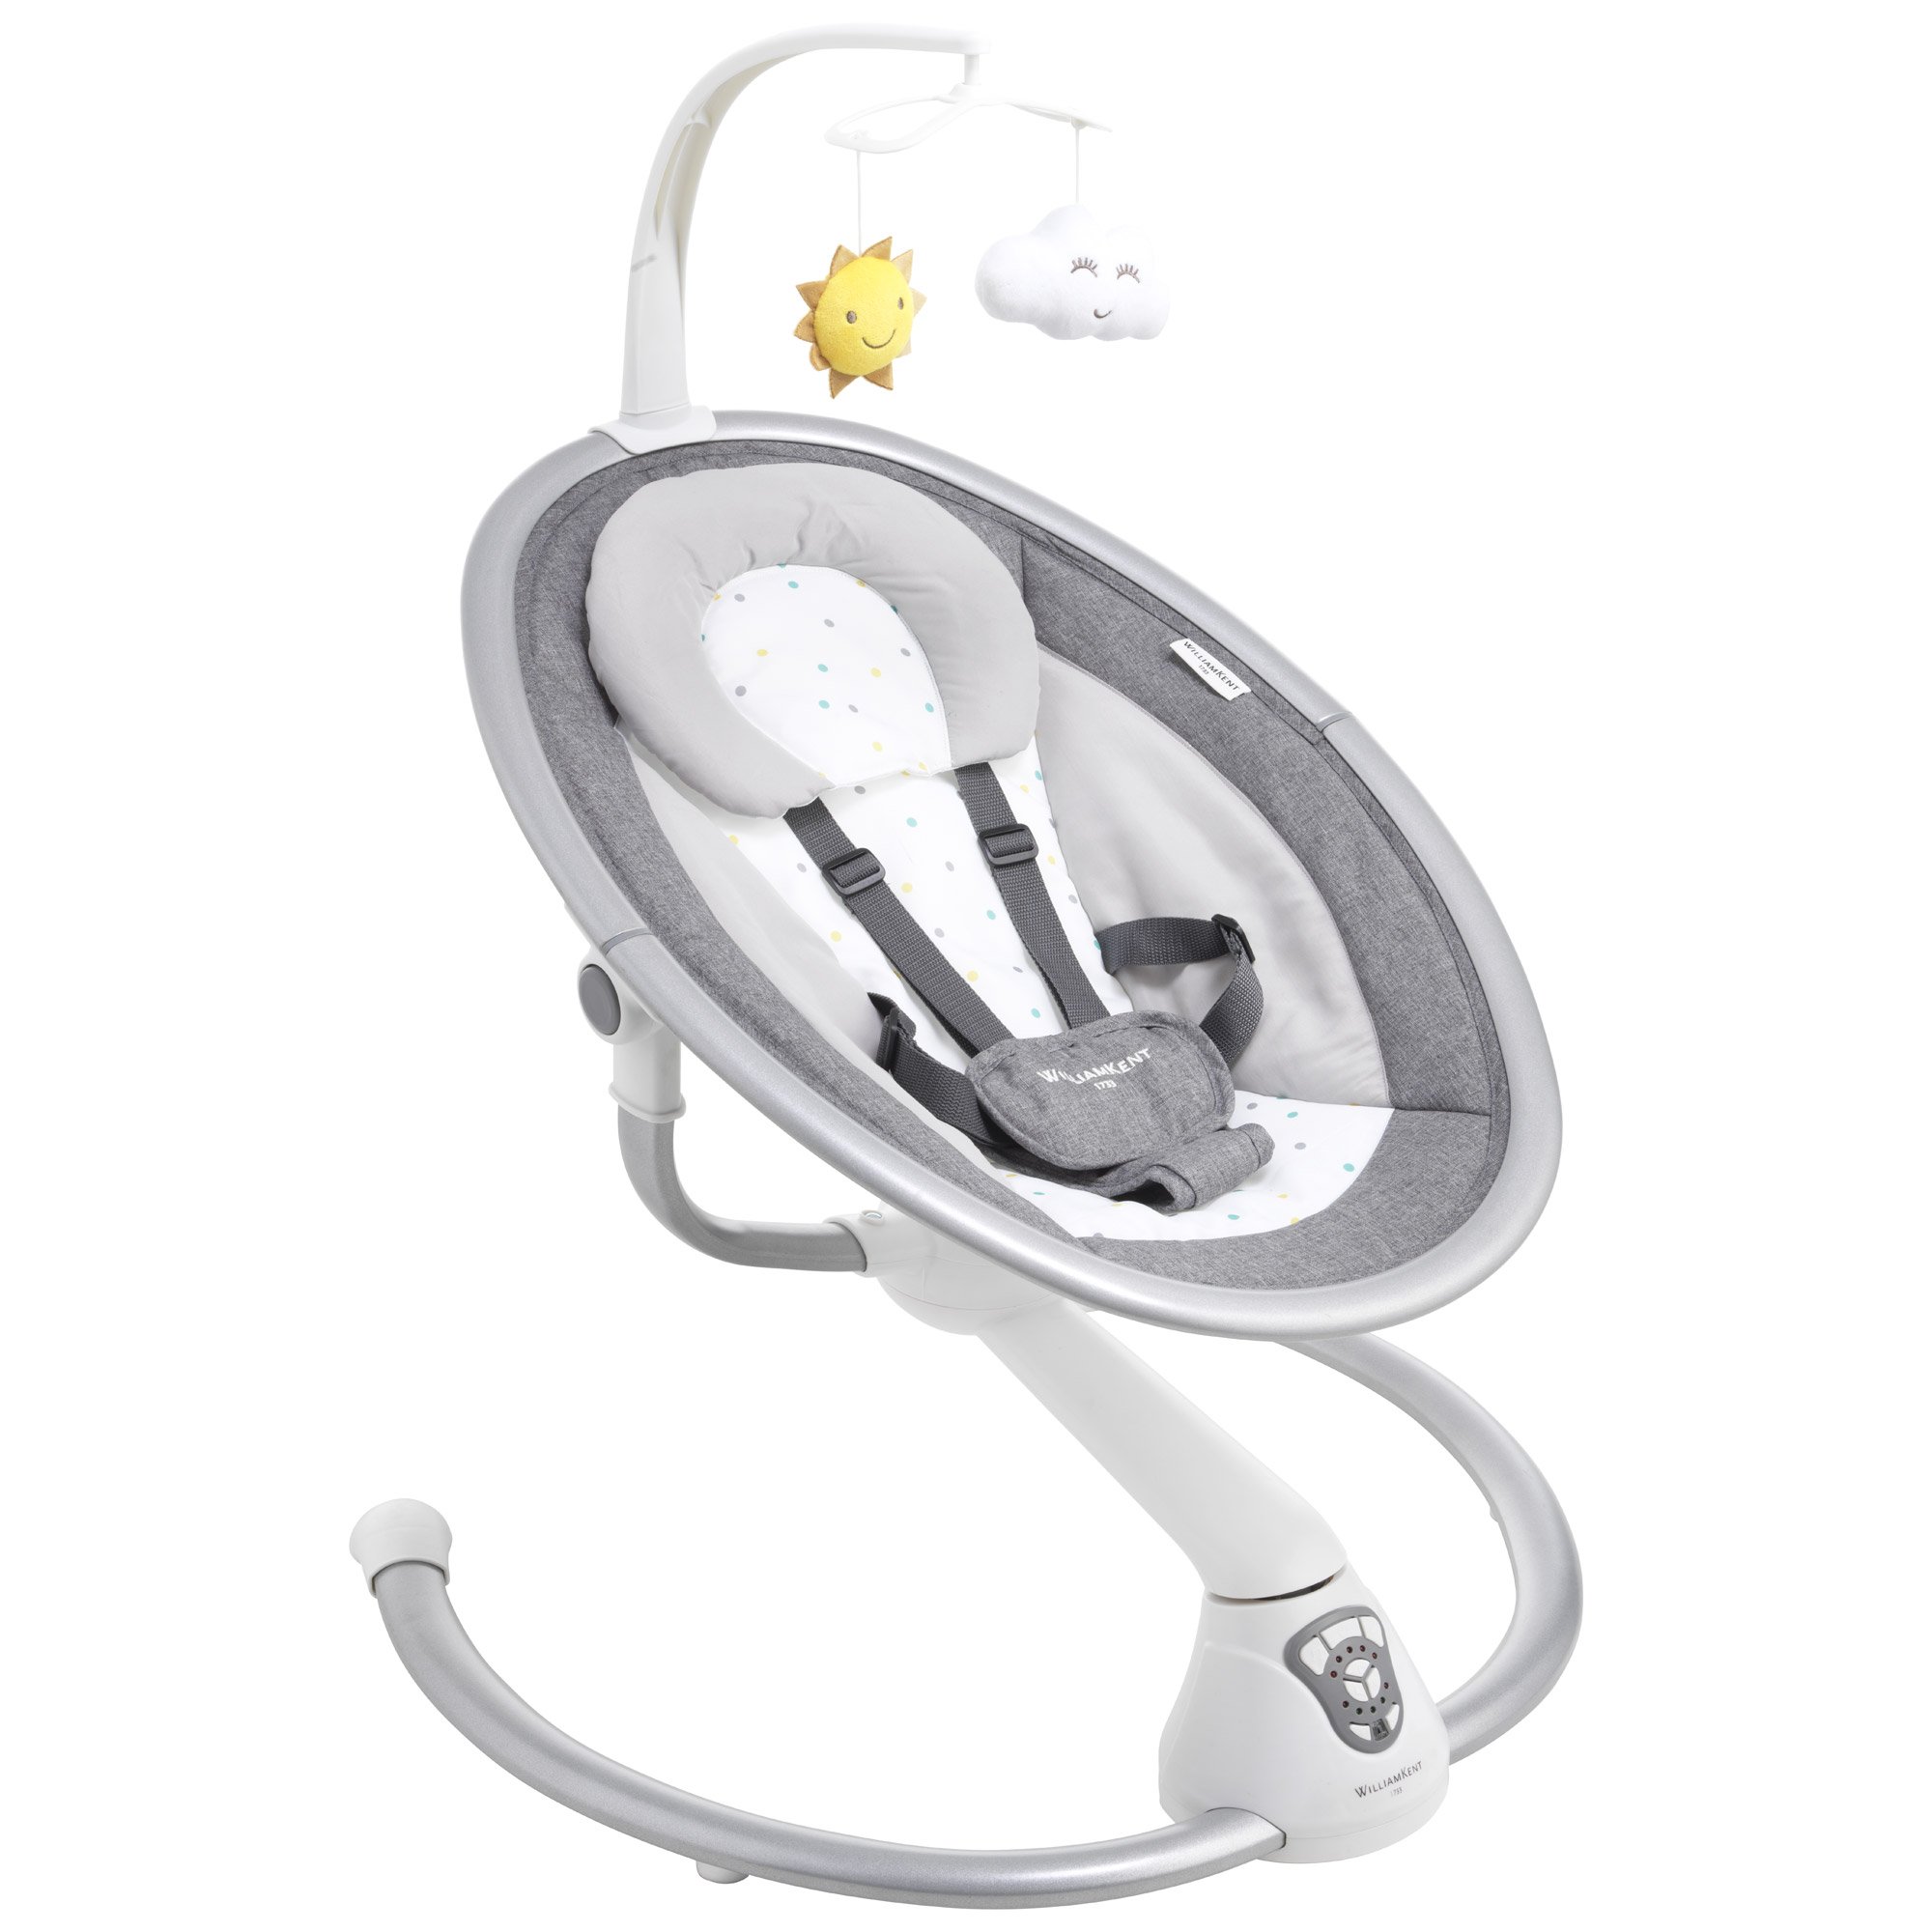 Transat balancelle électrique pour bébé Baby Swing Gris CANGAROO Pas Cher 